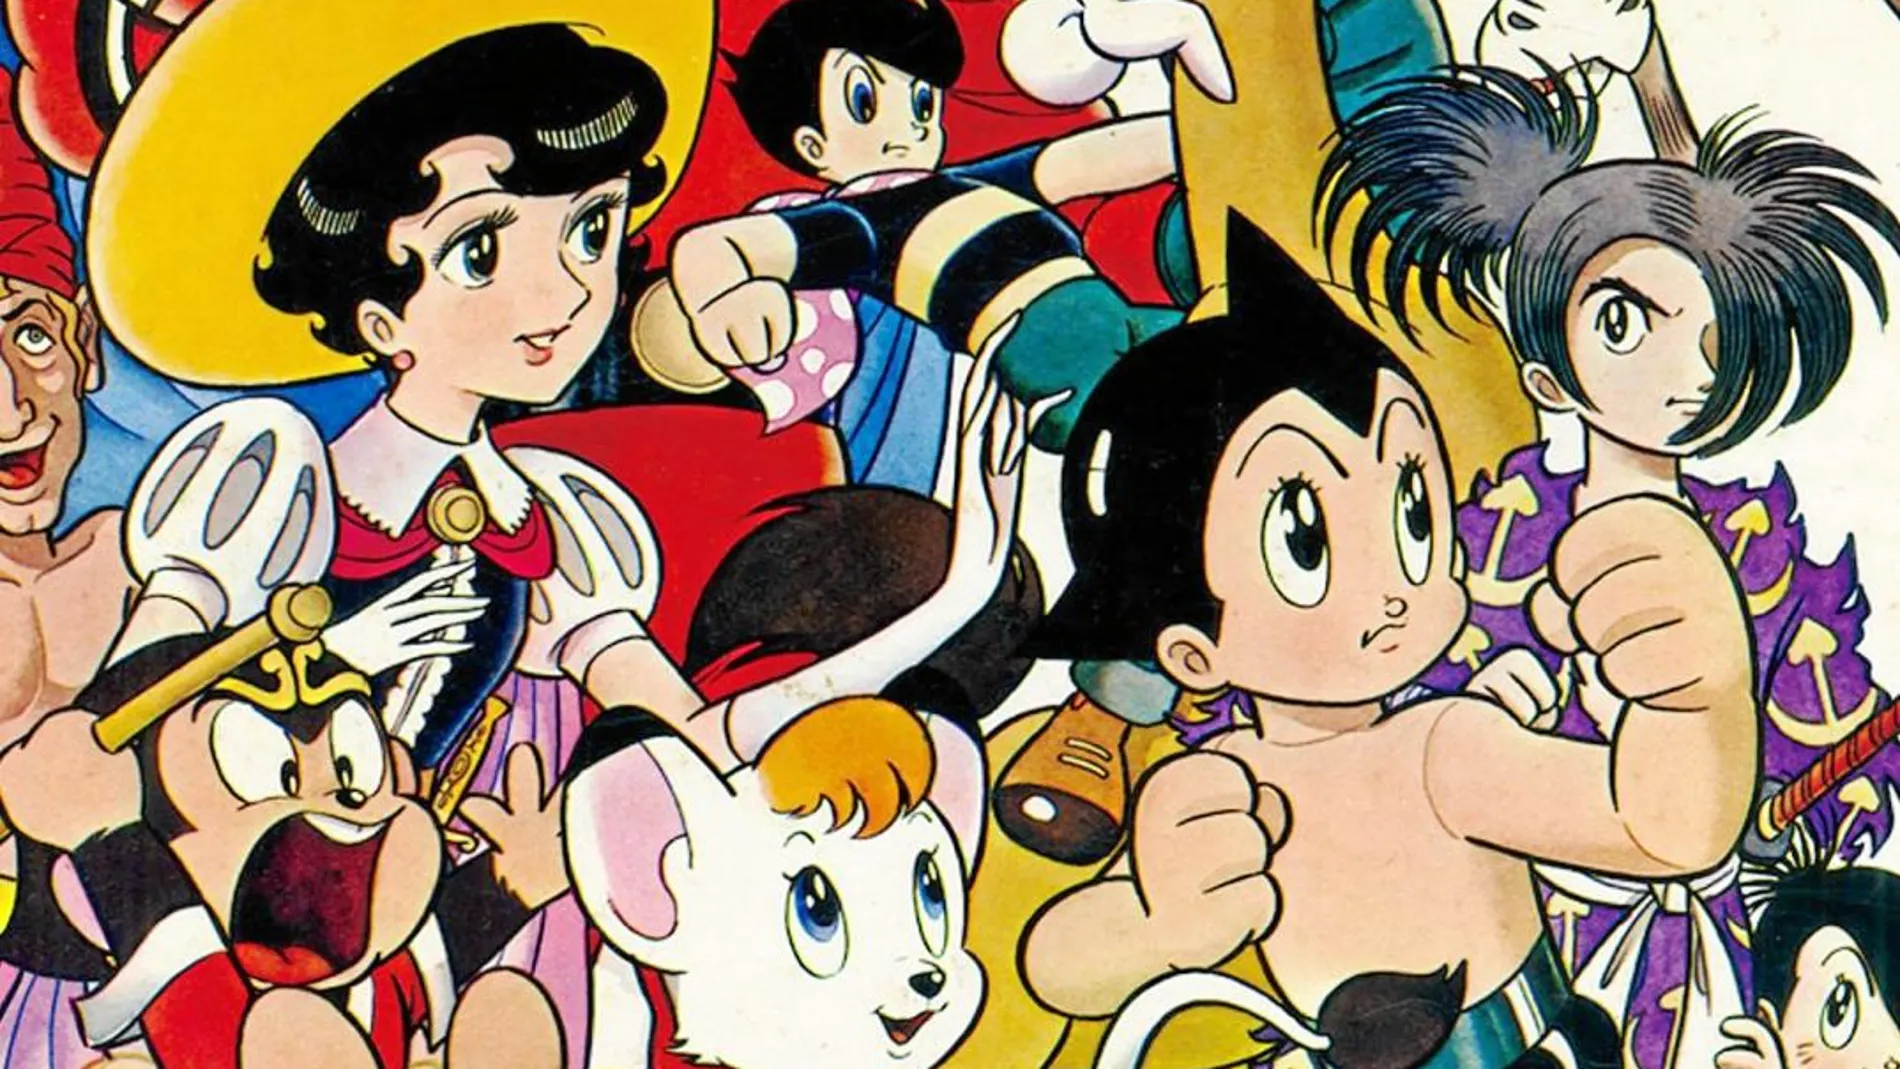 Los personajes creados por Osamu Tezuka protagonizarán el salón